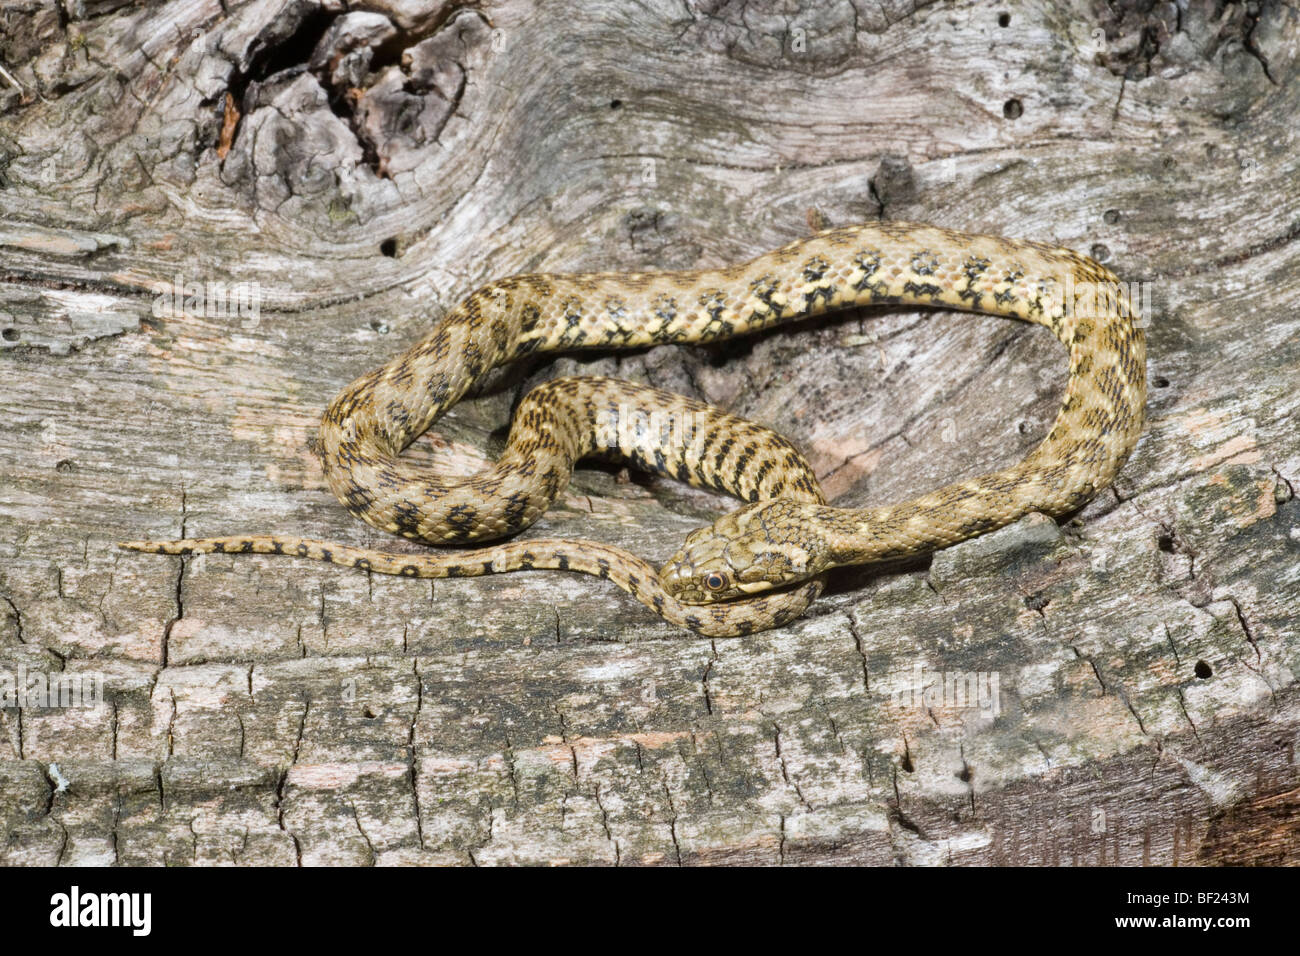 Viperine Natrix maura (serpent d'eau). Réminiscence d'une espèce ​Viper venimeux, mais sans danger pour les personnes. Banque D'Images